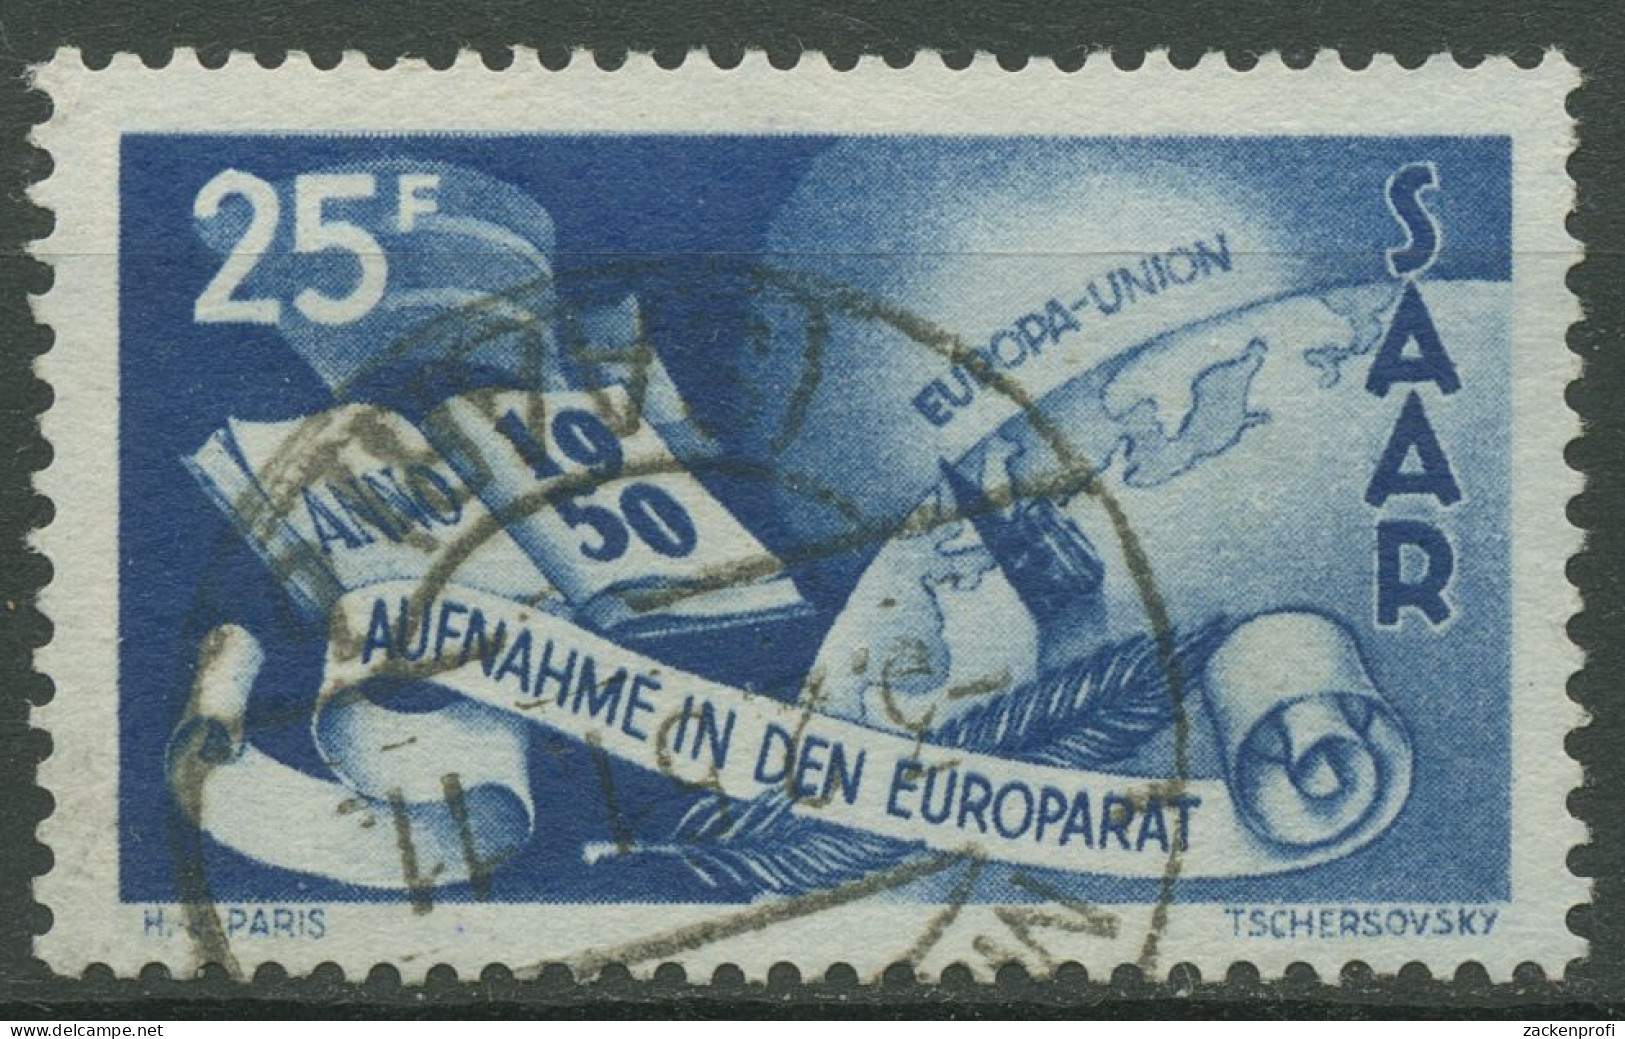 Saarland 1950 Aufnahme Des Saarlandes In Den Europarat 297 Gestempelt - Gebraucht